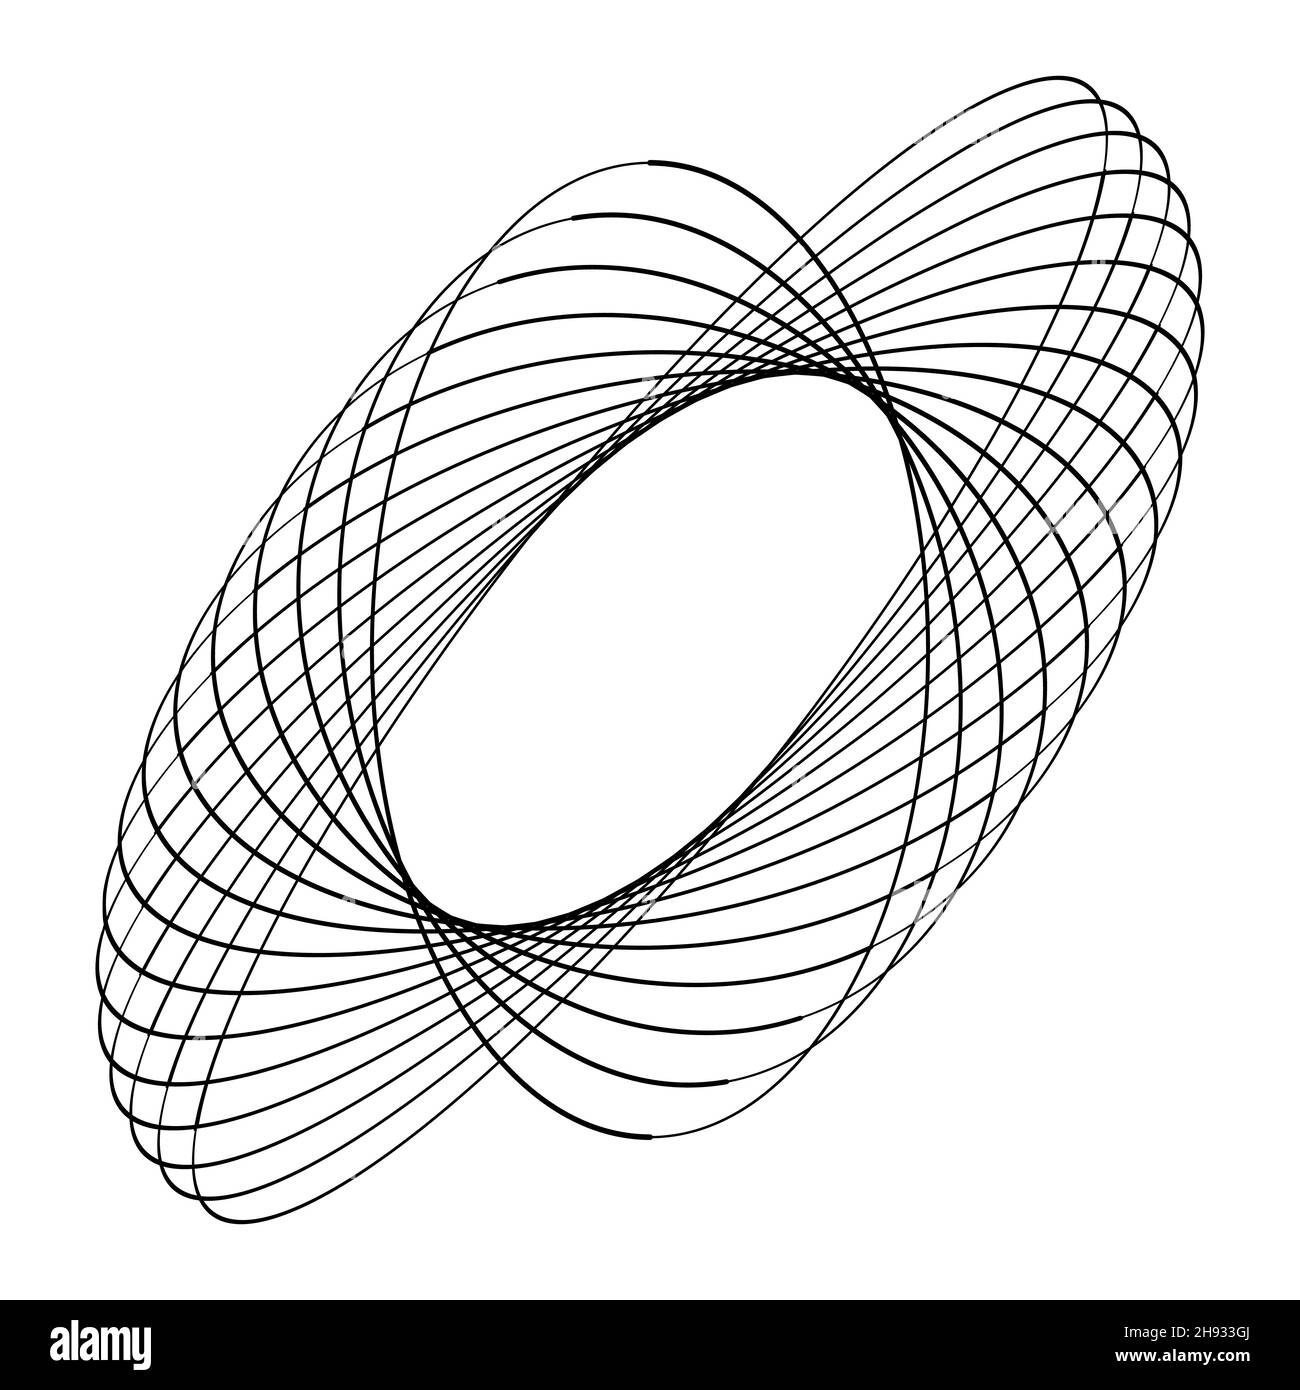 Black ellipses in spiral form. Vector illustration. Trendy design element for frame, round technology logo, sign, symbol, web, prints, posters Stock Vector